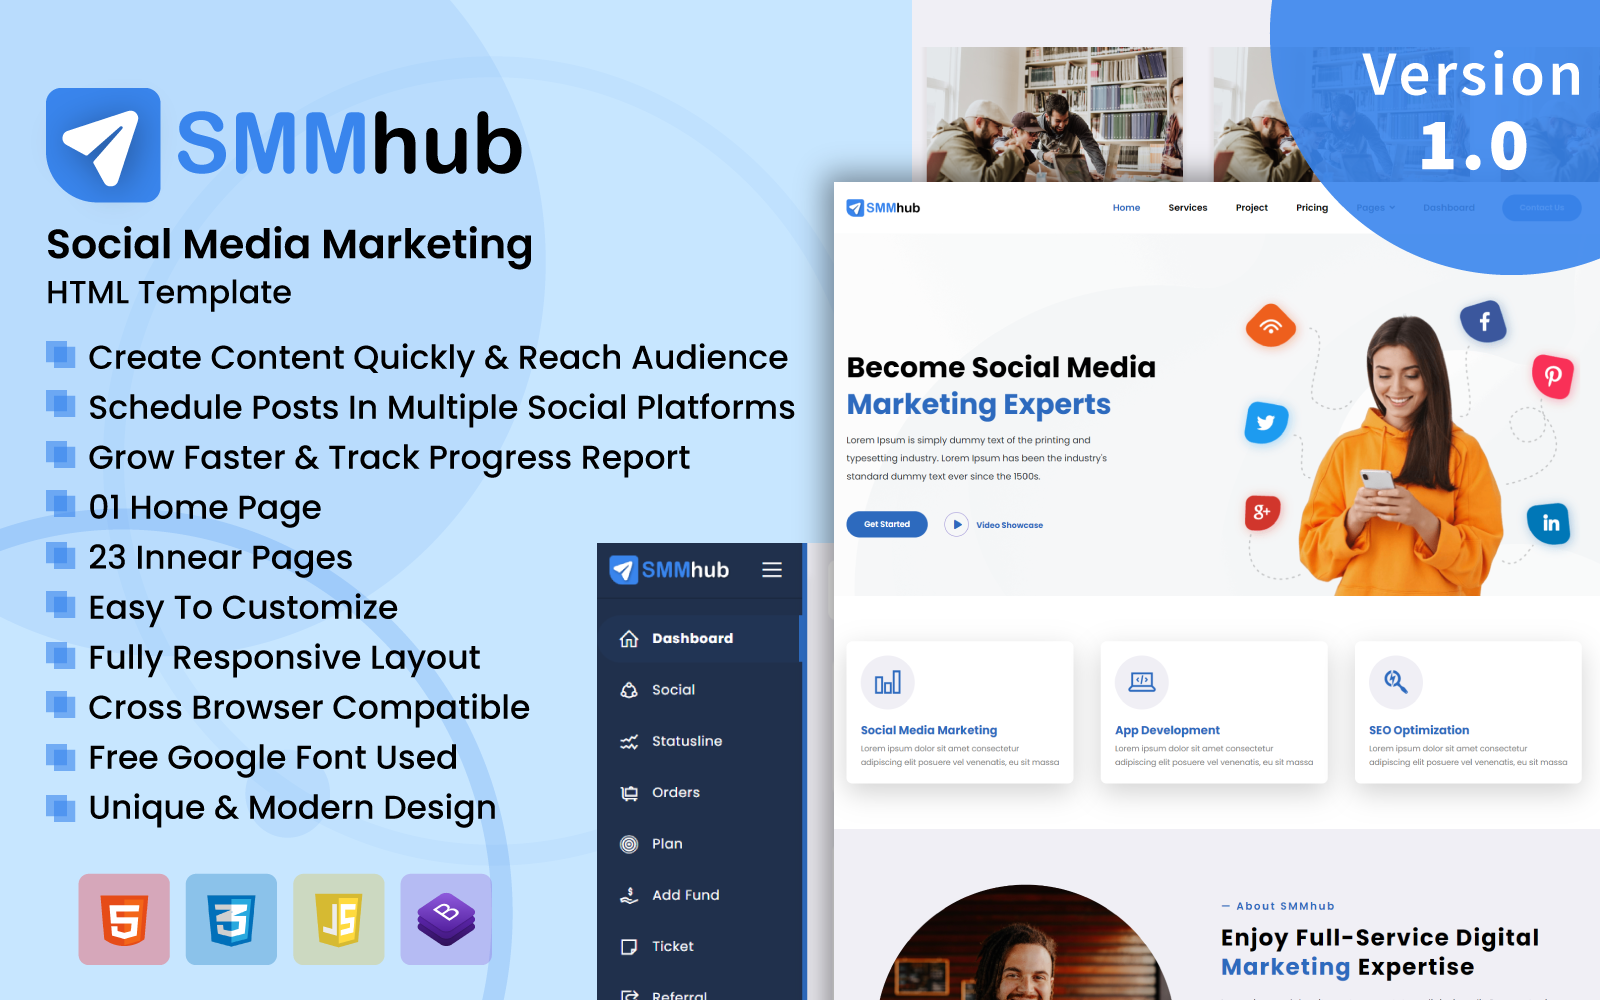 SMMhub - Social Media Marketing HTML Template